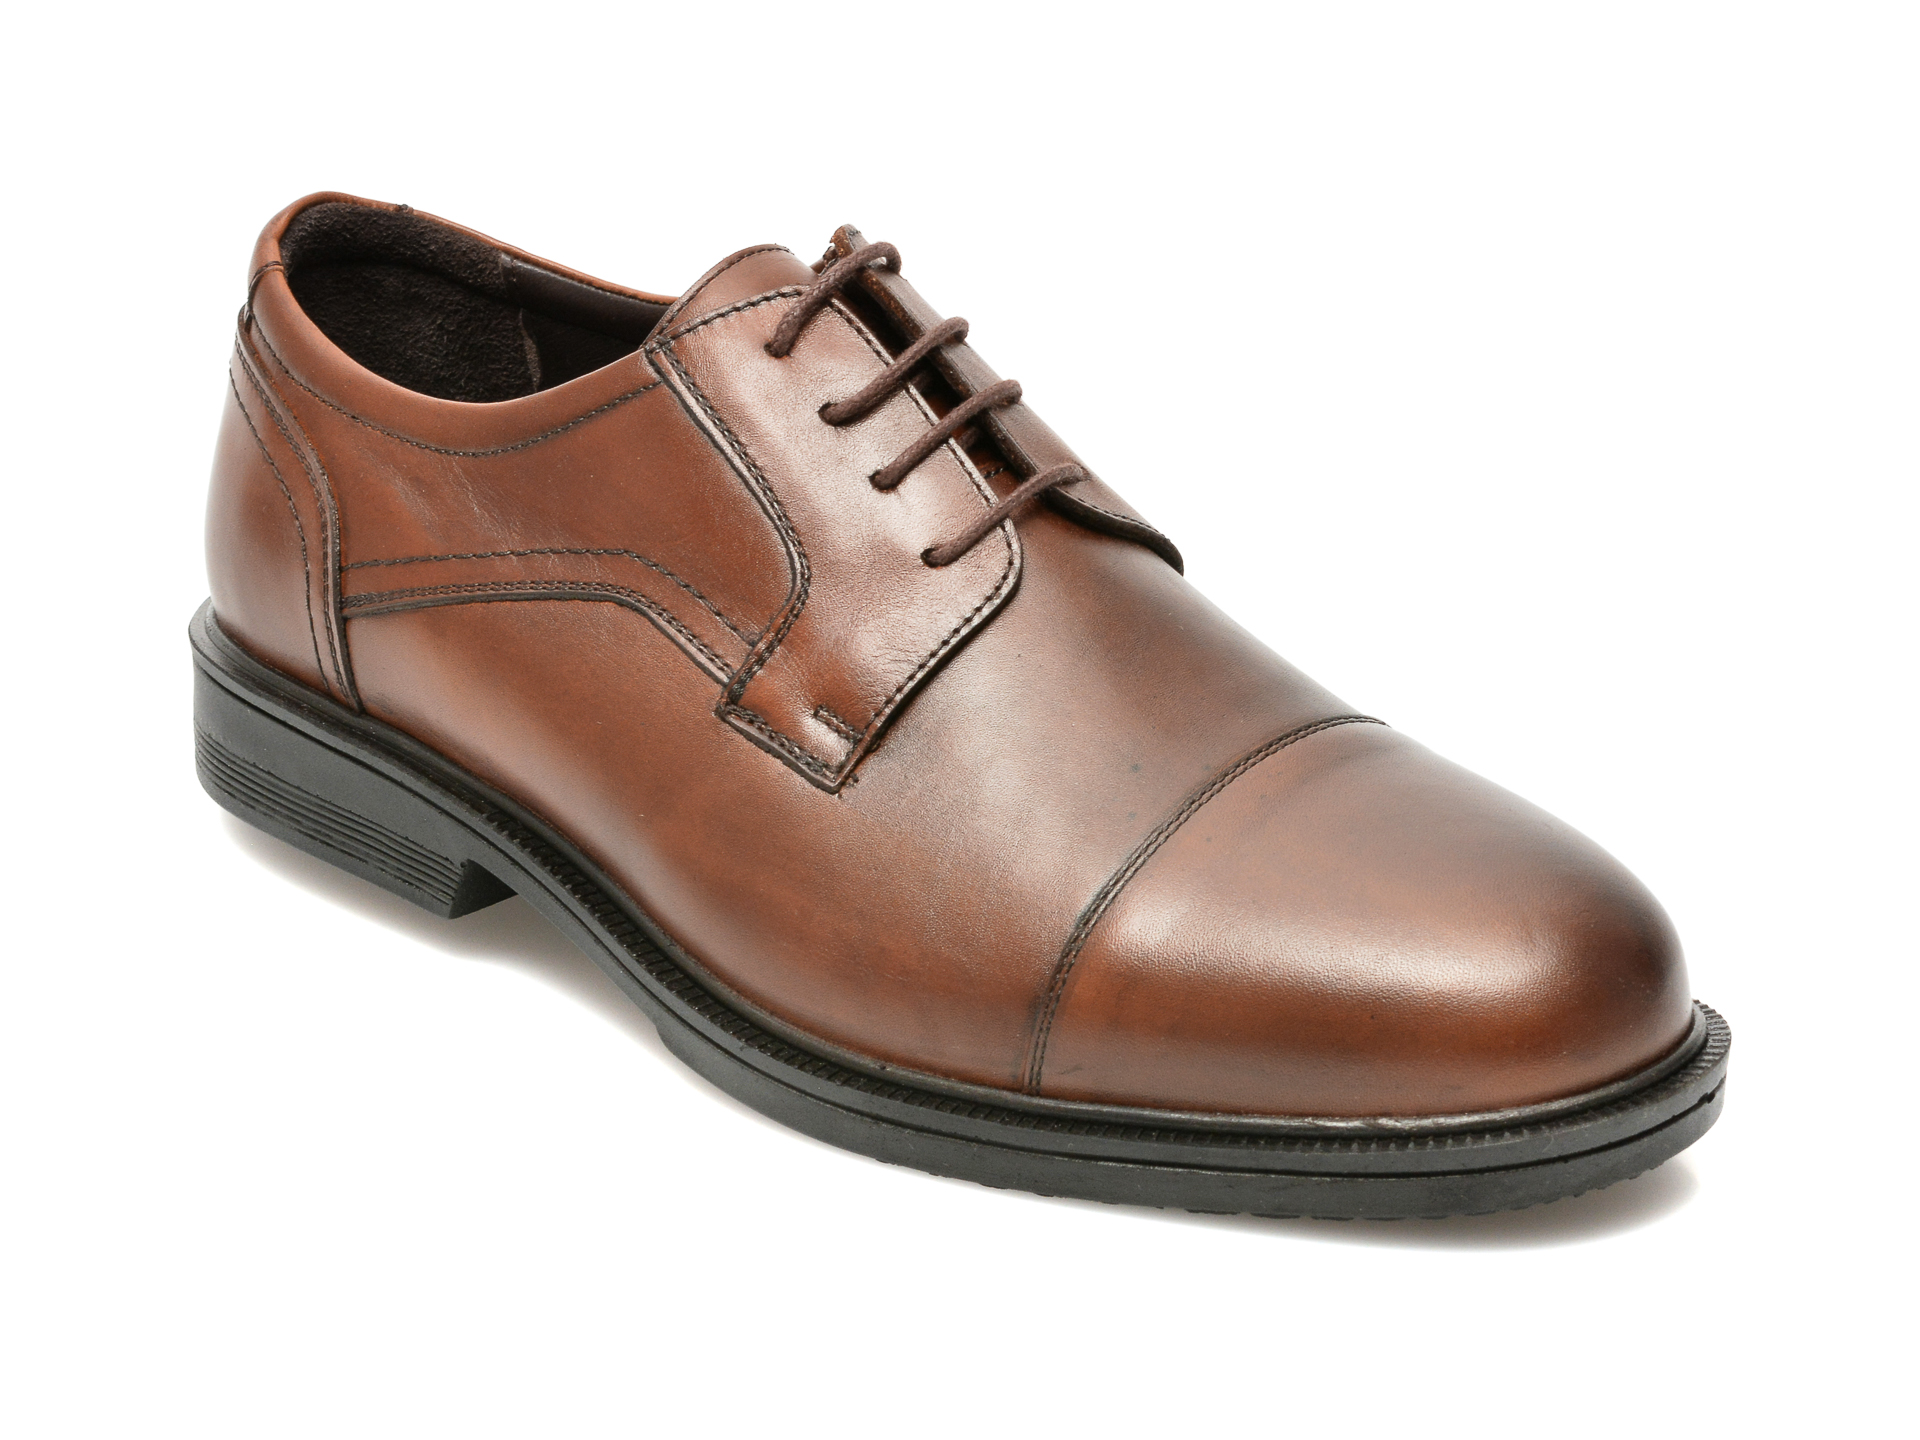 Pantofi OTTER maro, 2511, din piele naturala AXXELLL